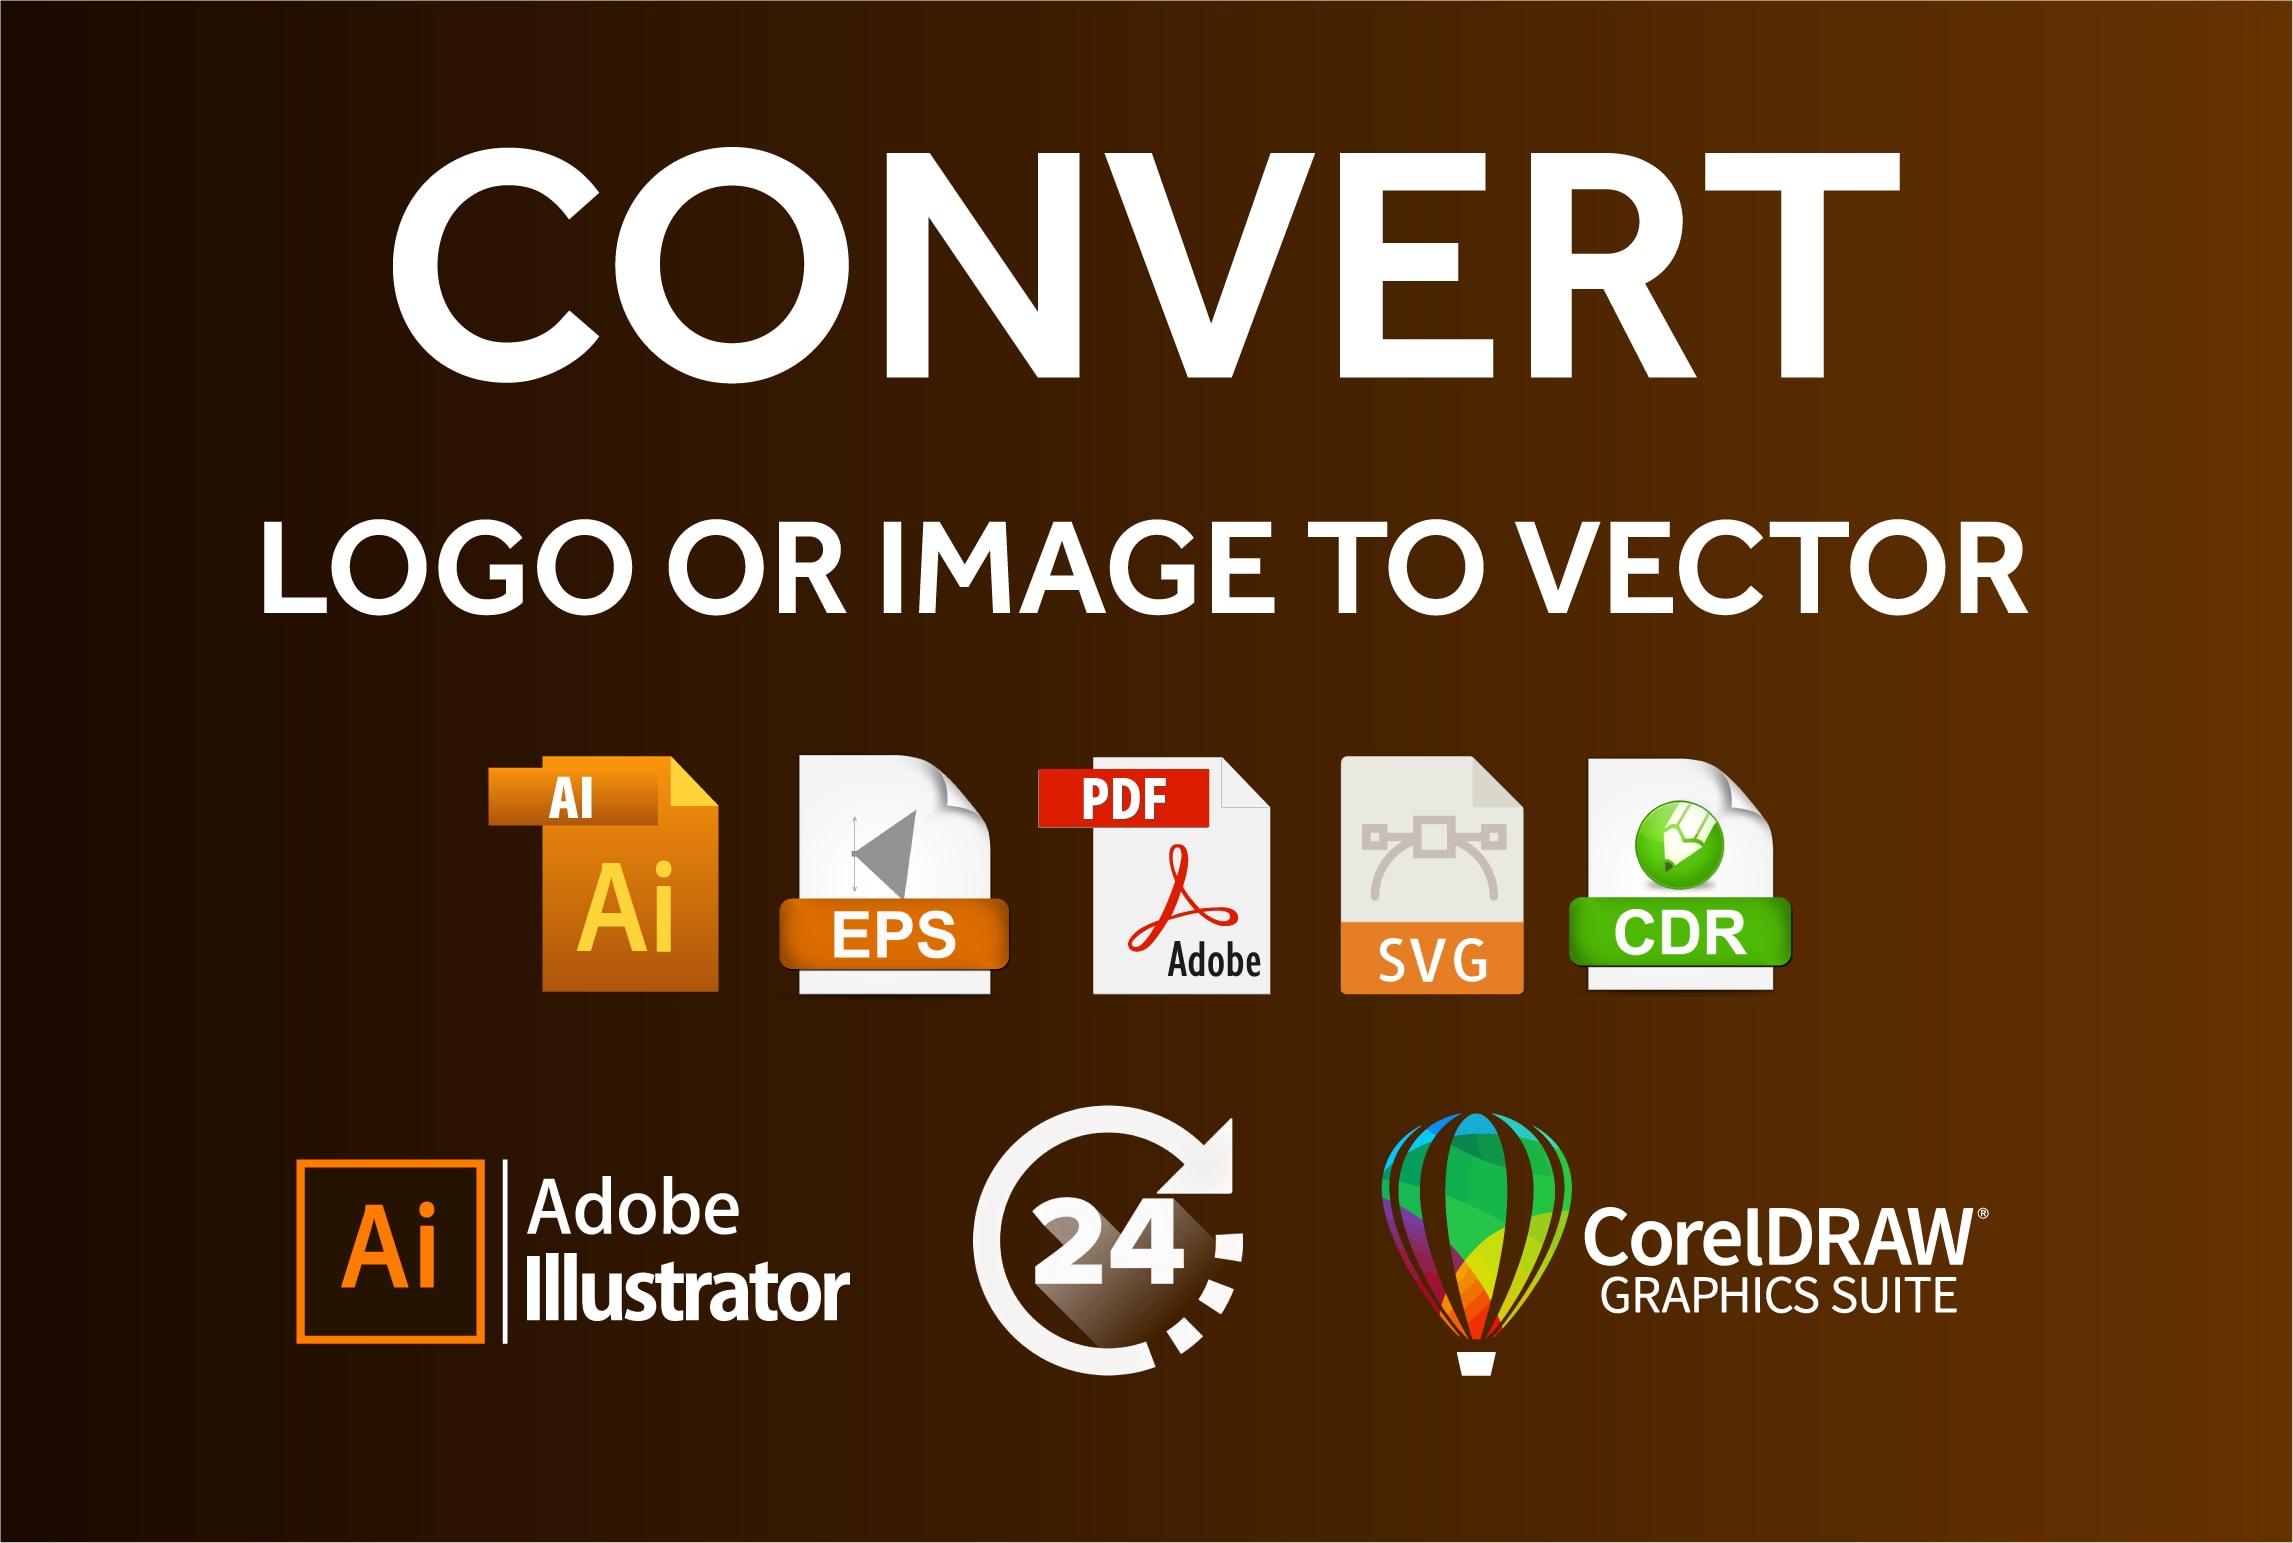 Eccocar Logo PNG vector in SVG, PDF, AI, CDR format